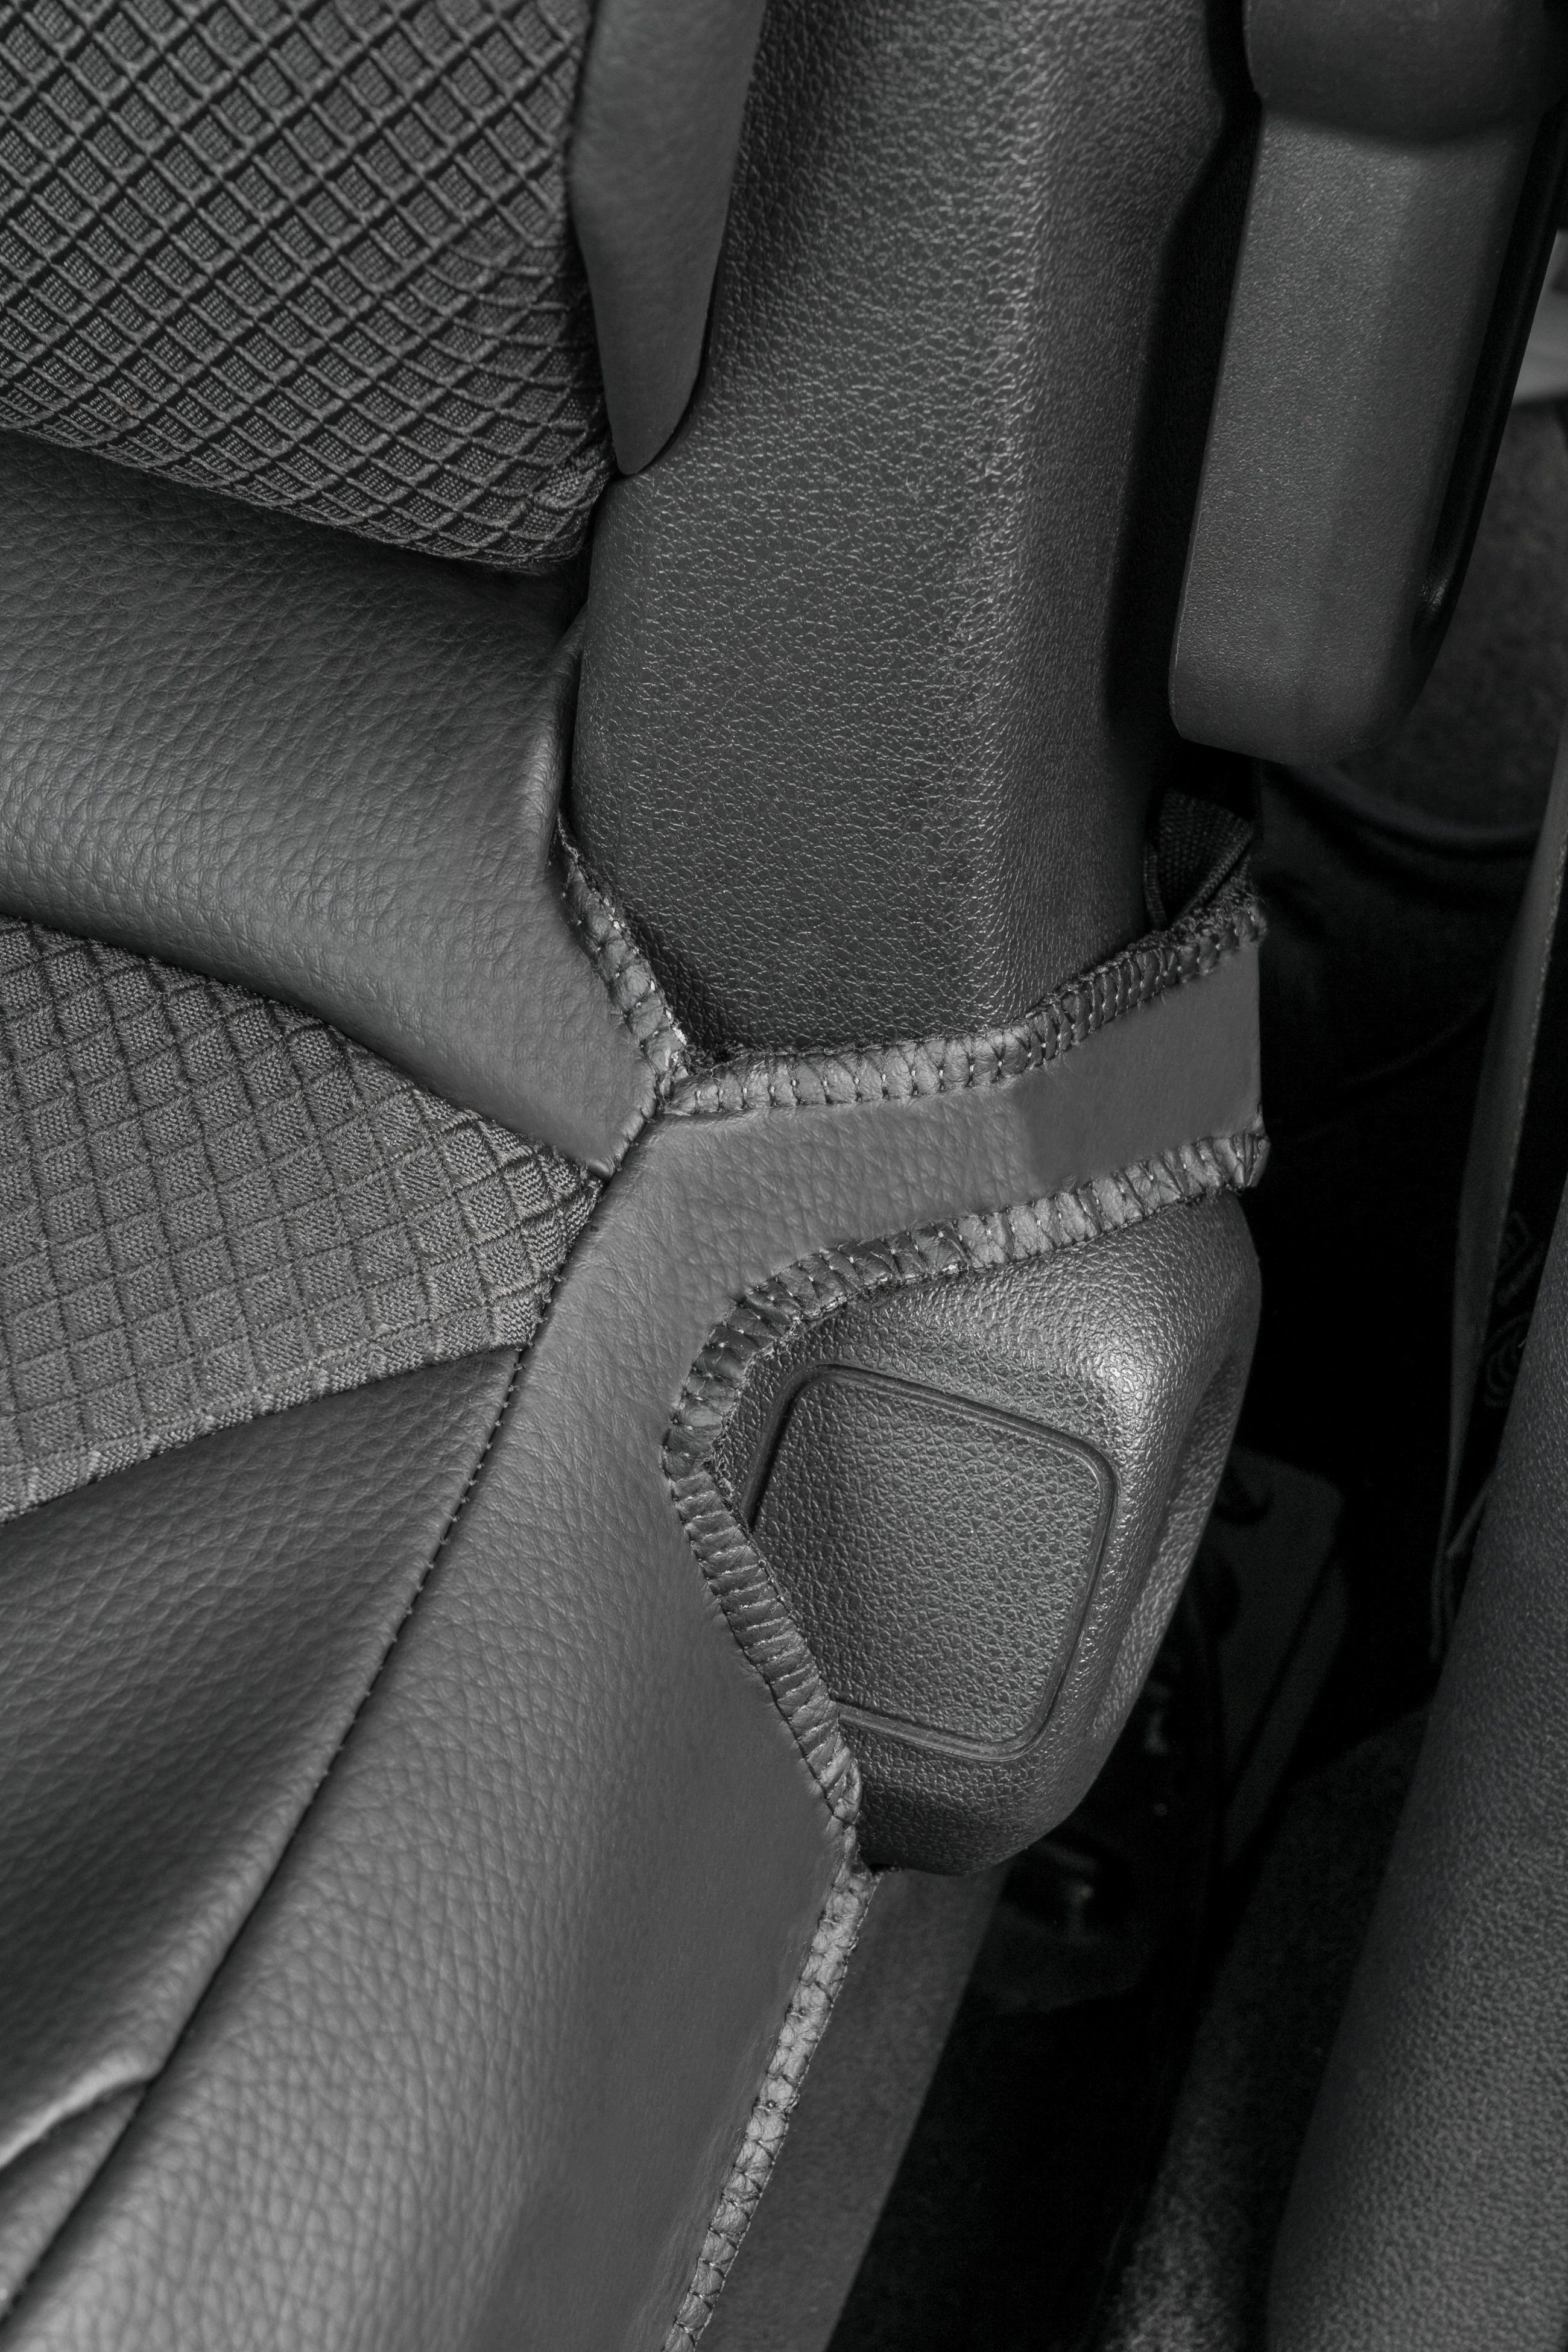 Premium autozetelhoezen compatibel met Citroen Berlingo 2 compatibel met 2 enkele zetels vooraan gemaakt van kunstleder vanaf bouwjaar 2009 - Vandaag